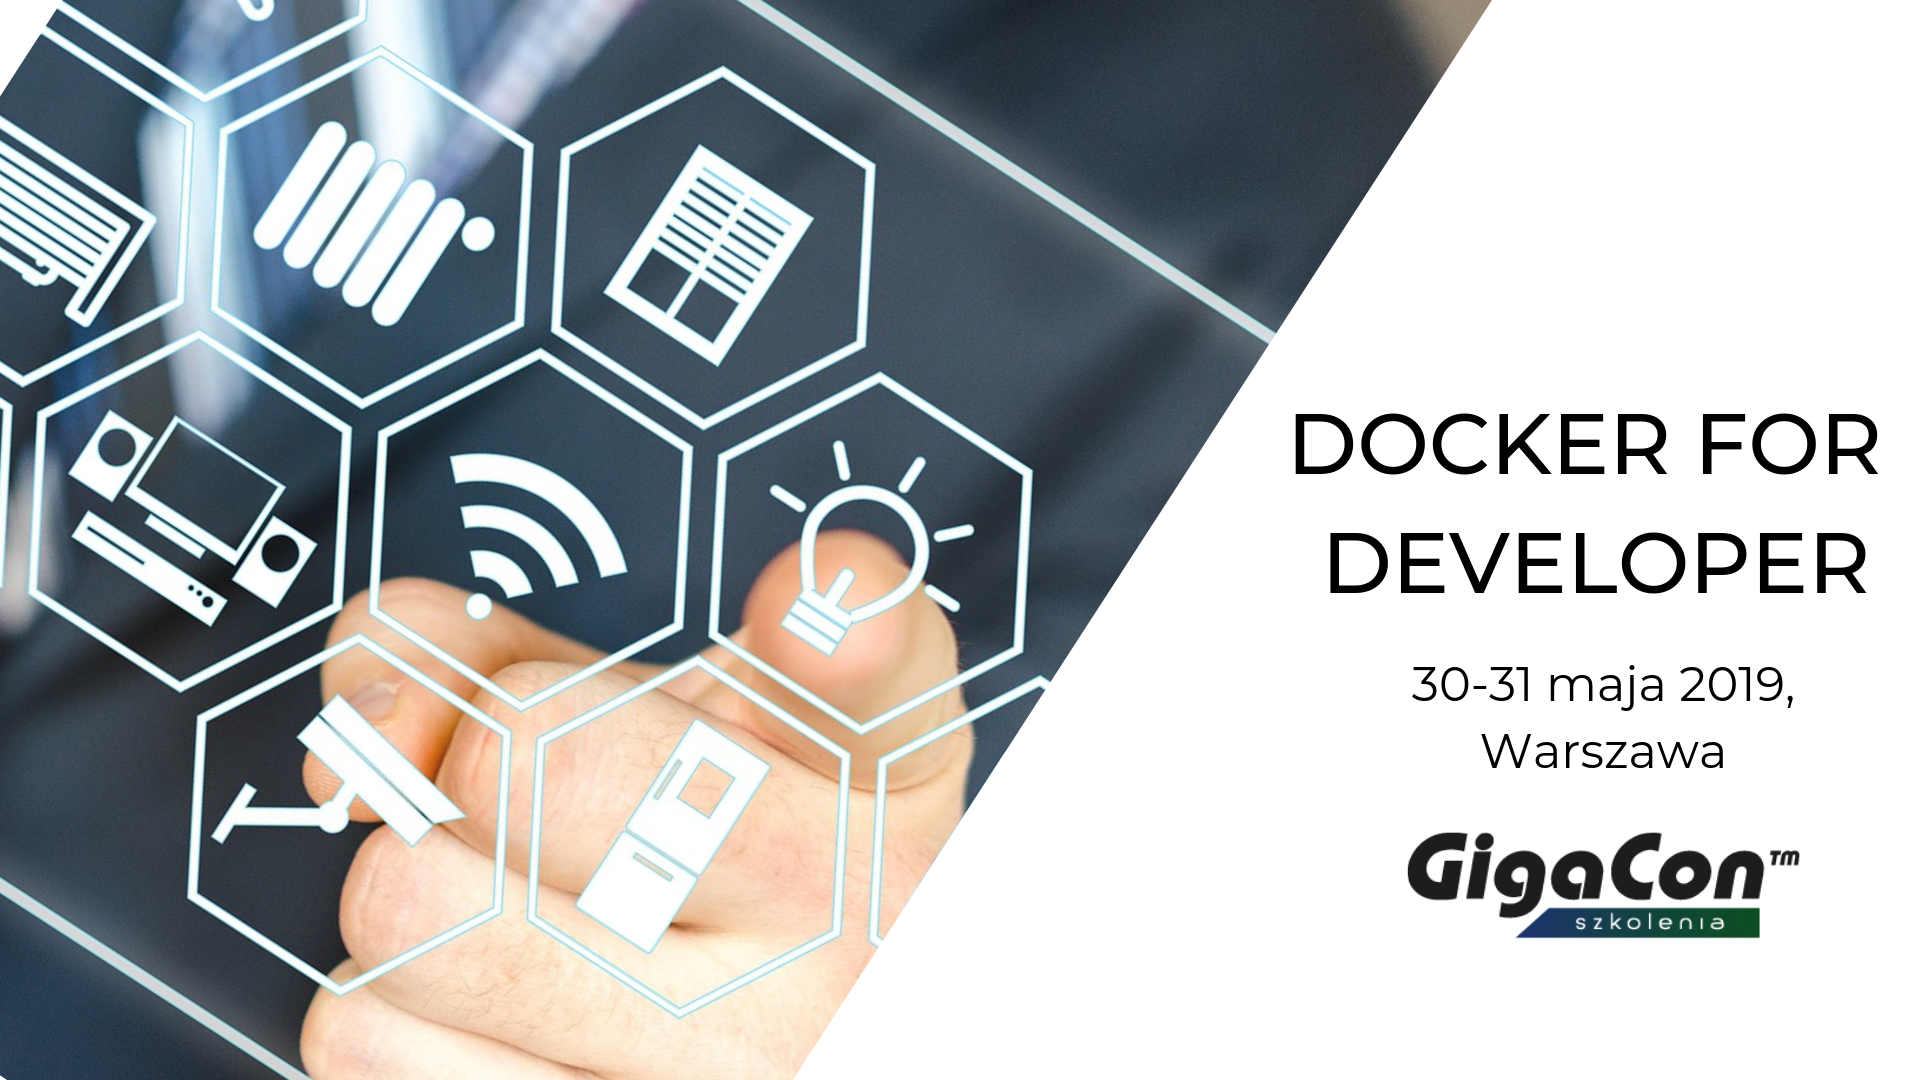 gigacon-docker-for-developer-wrzesien-2019